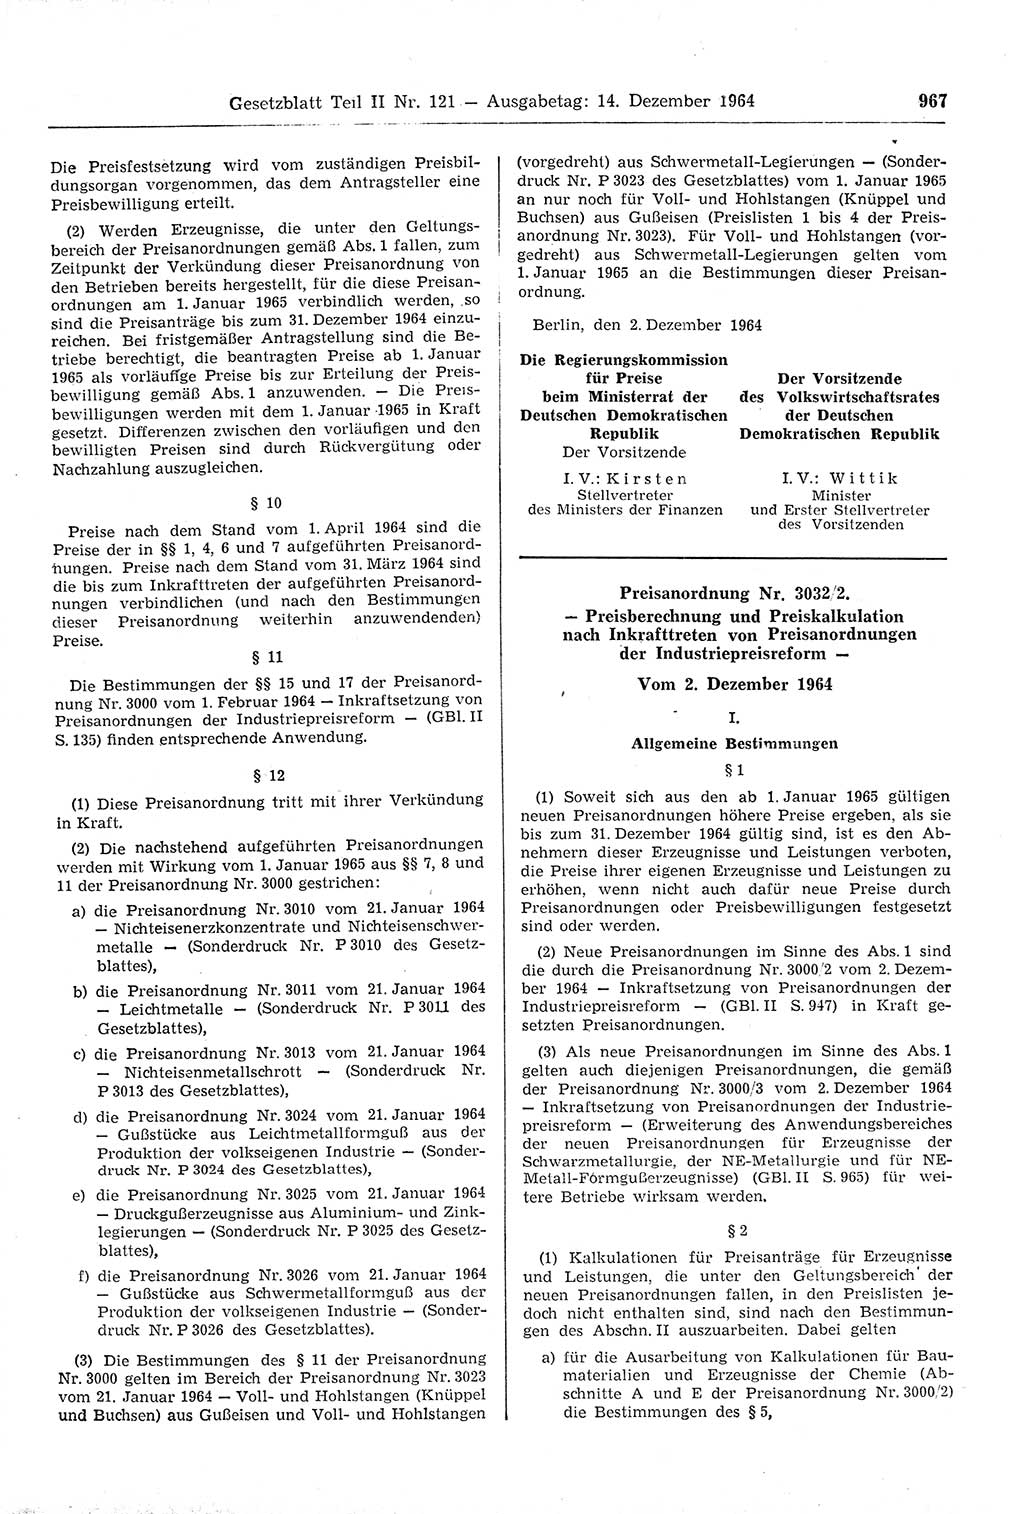 Gesetzblatt (GBl.) der Deutschen Demokratischen Republik (DDR) Teil ⅠⅠ 1964, Seite 967 (GBl. DDR ⅠⅠ 1964, S. 967)